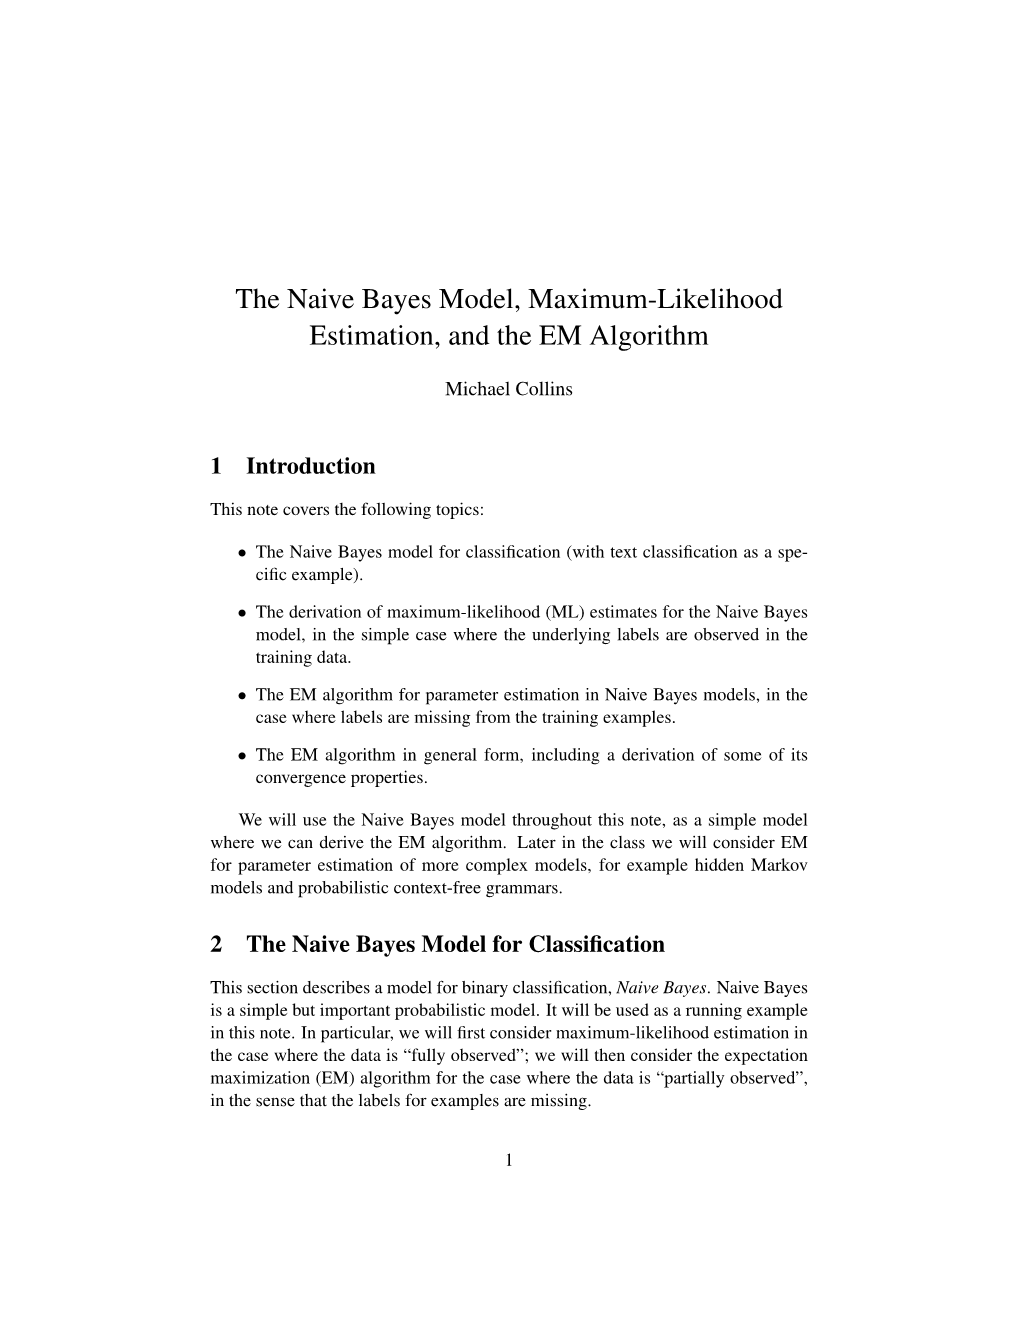 The Naive Bayes Model, Maximum-Likelihood Estimation, and the EM Algorithm